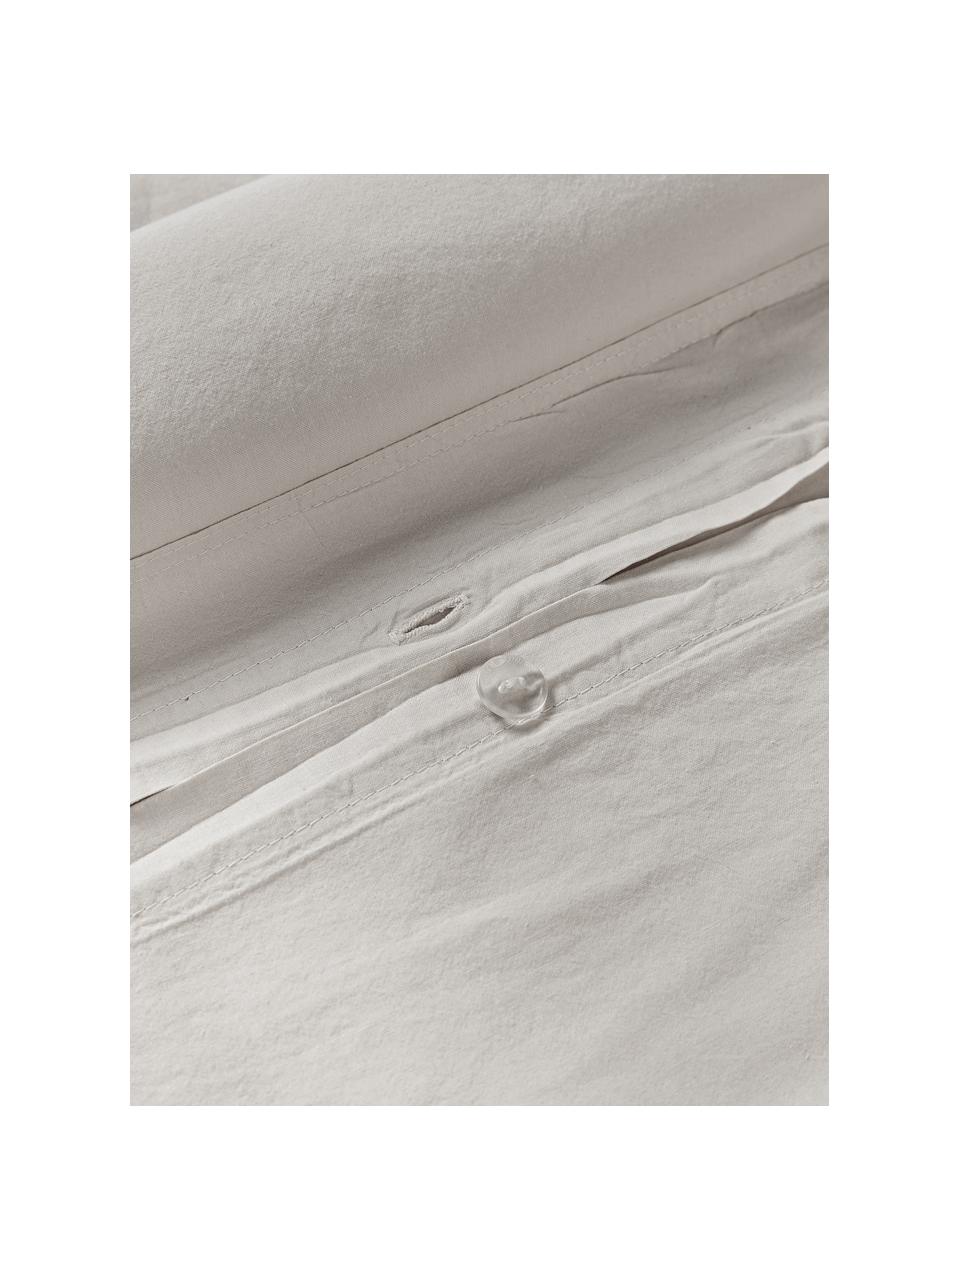 Bavlnená obliečka na paplón Darlyn, 100 %  bavlna
Hustota vlákna 150 TC, štandard kvalita

Posteľná bielizeň z bavlny je príjemná na dotyk, dobre absorbuje vlhkosť a je vhodná pre alergikov

Látka bola podrobená špeciálnemu procesu „Softwash”, ktorý zabezpečuje nepravidelný vypraný vzhľad, je mäkká, pružná a má prirodzený krčivý vzhľad, ktorý nevyžaduje žehlenie a pôsobí útulne

Materiál použitý v tomto produkte bol testovaný na škodlivé látky a certifikovaný podľa STANDARD 100 od OEKO-TEX®, 4265CIT, CITEVE., Svetlobéžová, Š 200 x D 200 cm